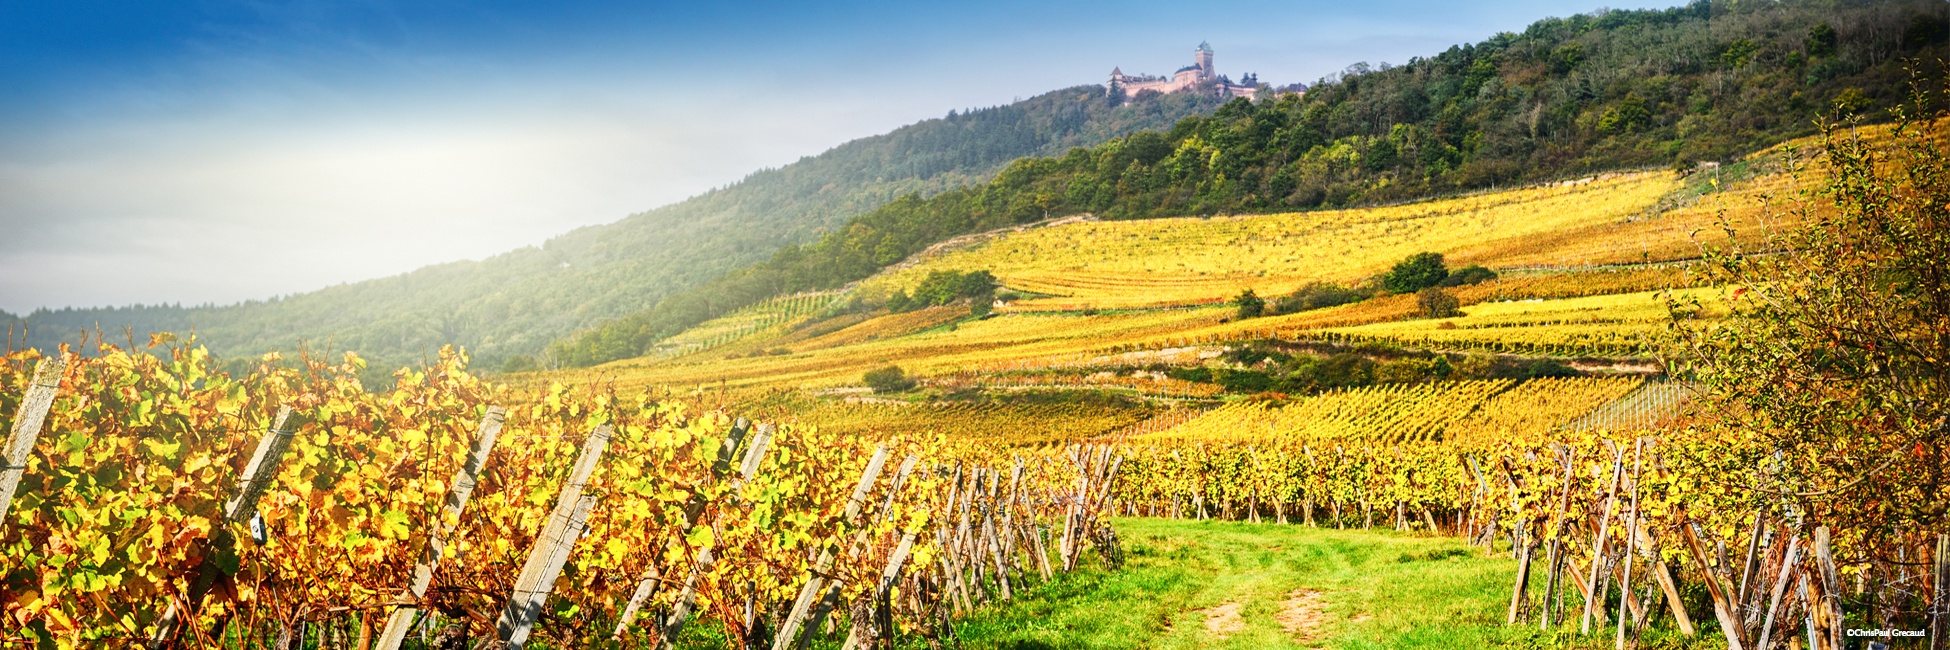 Automne en Alsace: 10 spots photos de vignobles sur la route des vins